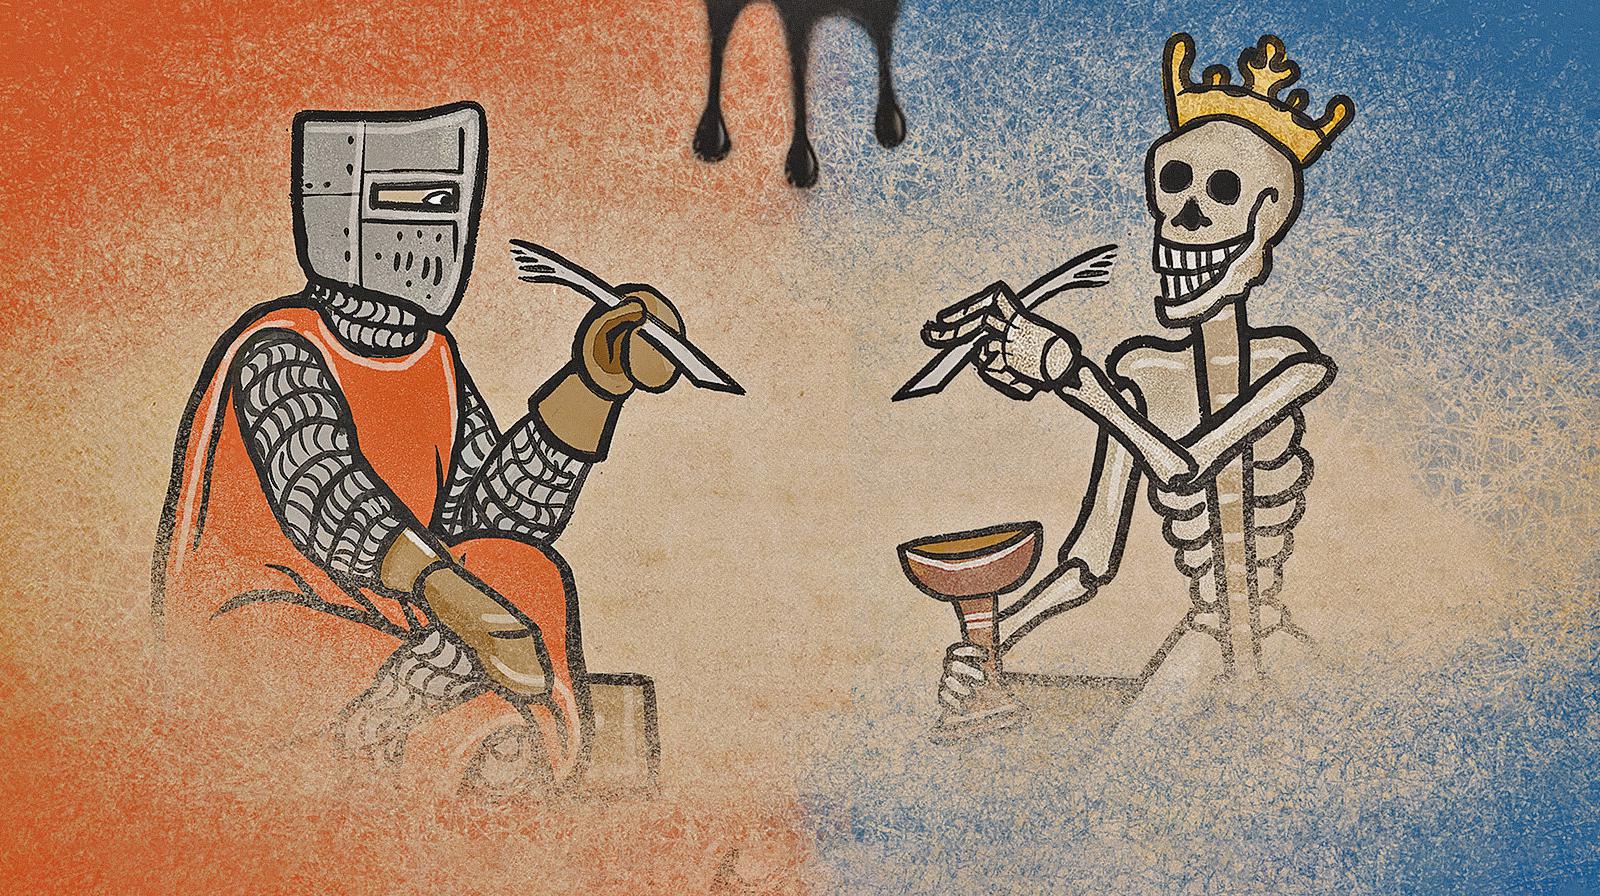 Inkulinati, la recensione del pazzo strategico a turni medievale in cui si disegnano miniature